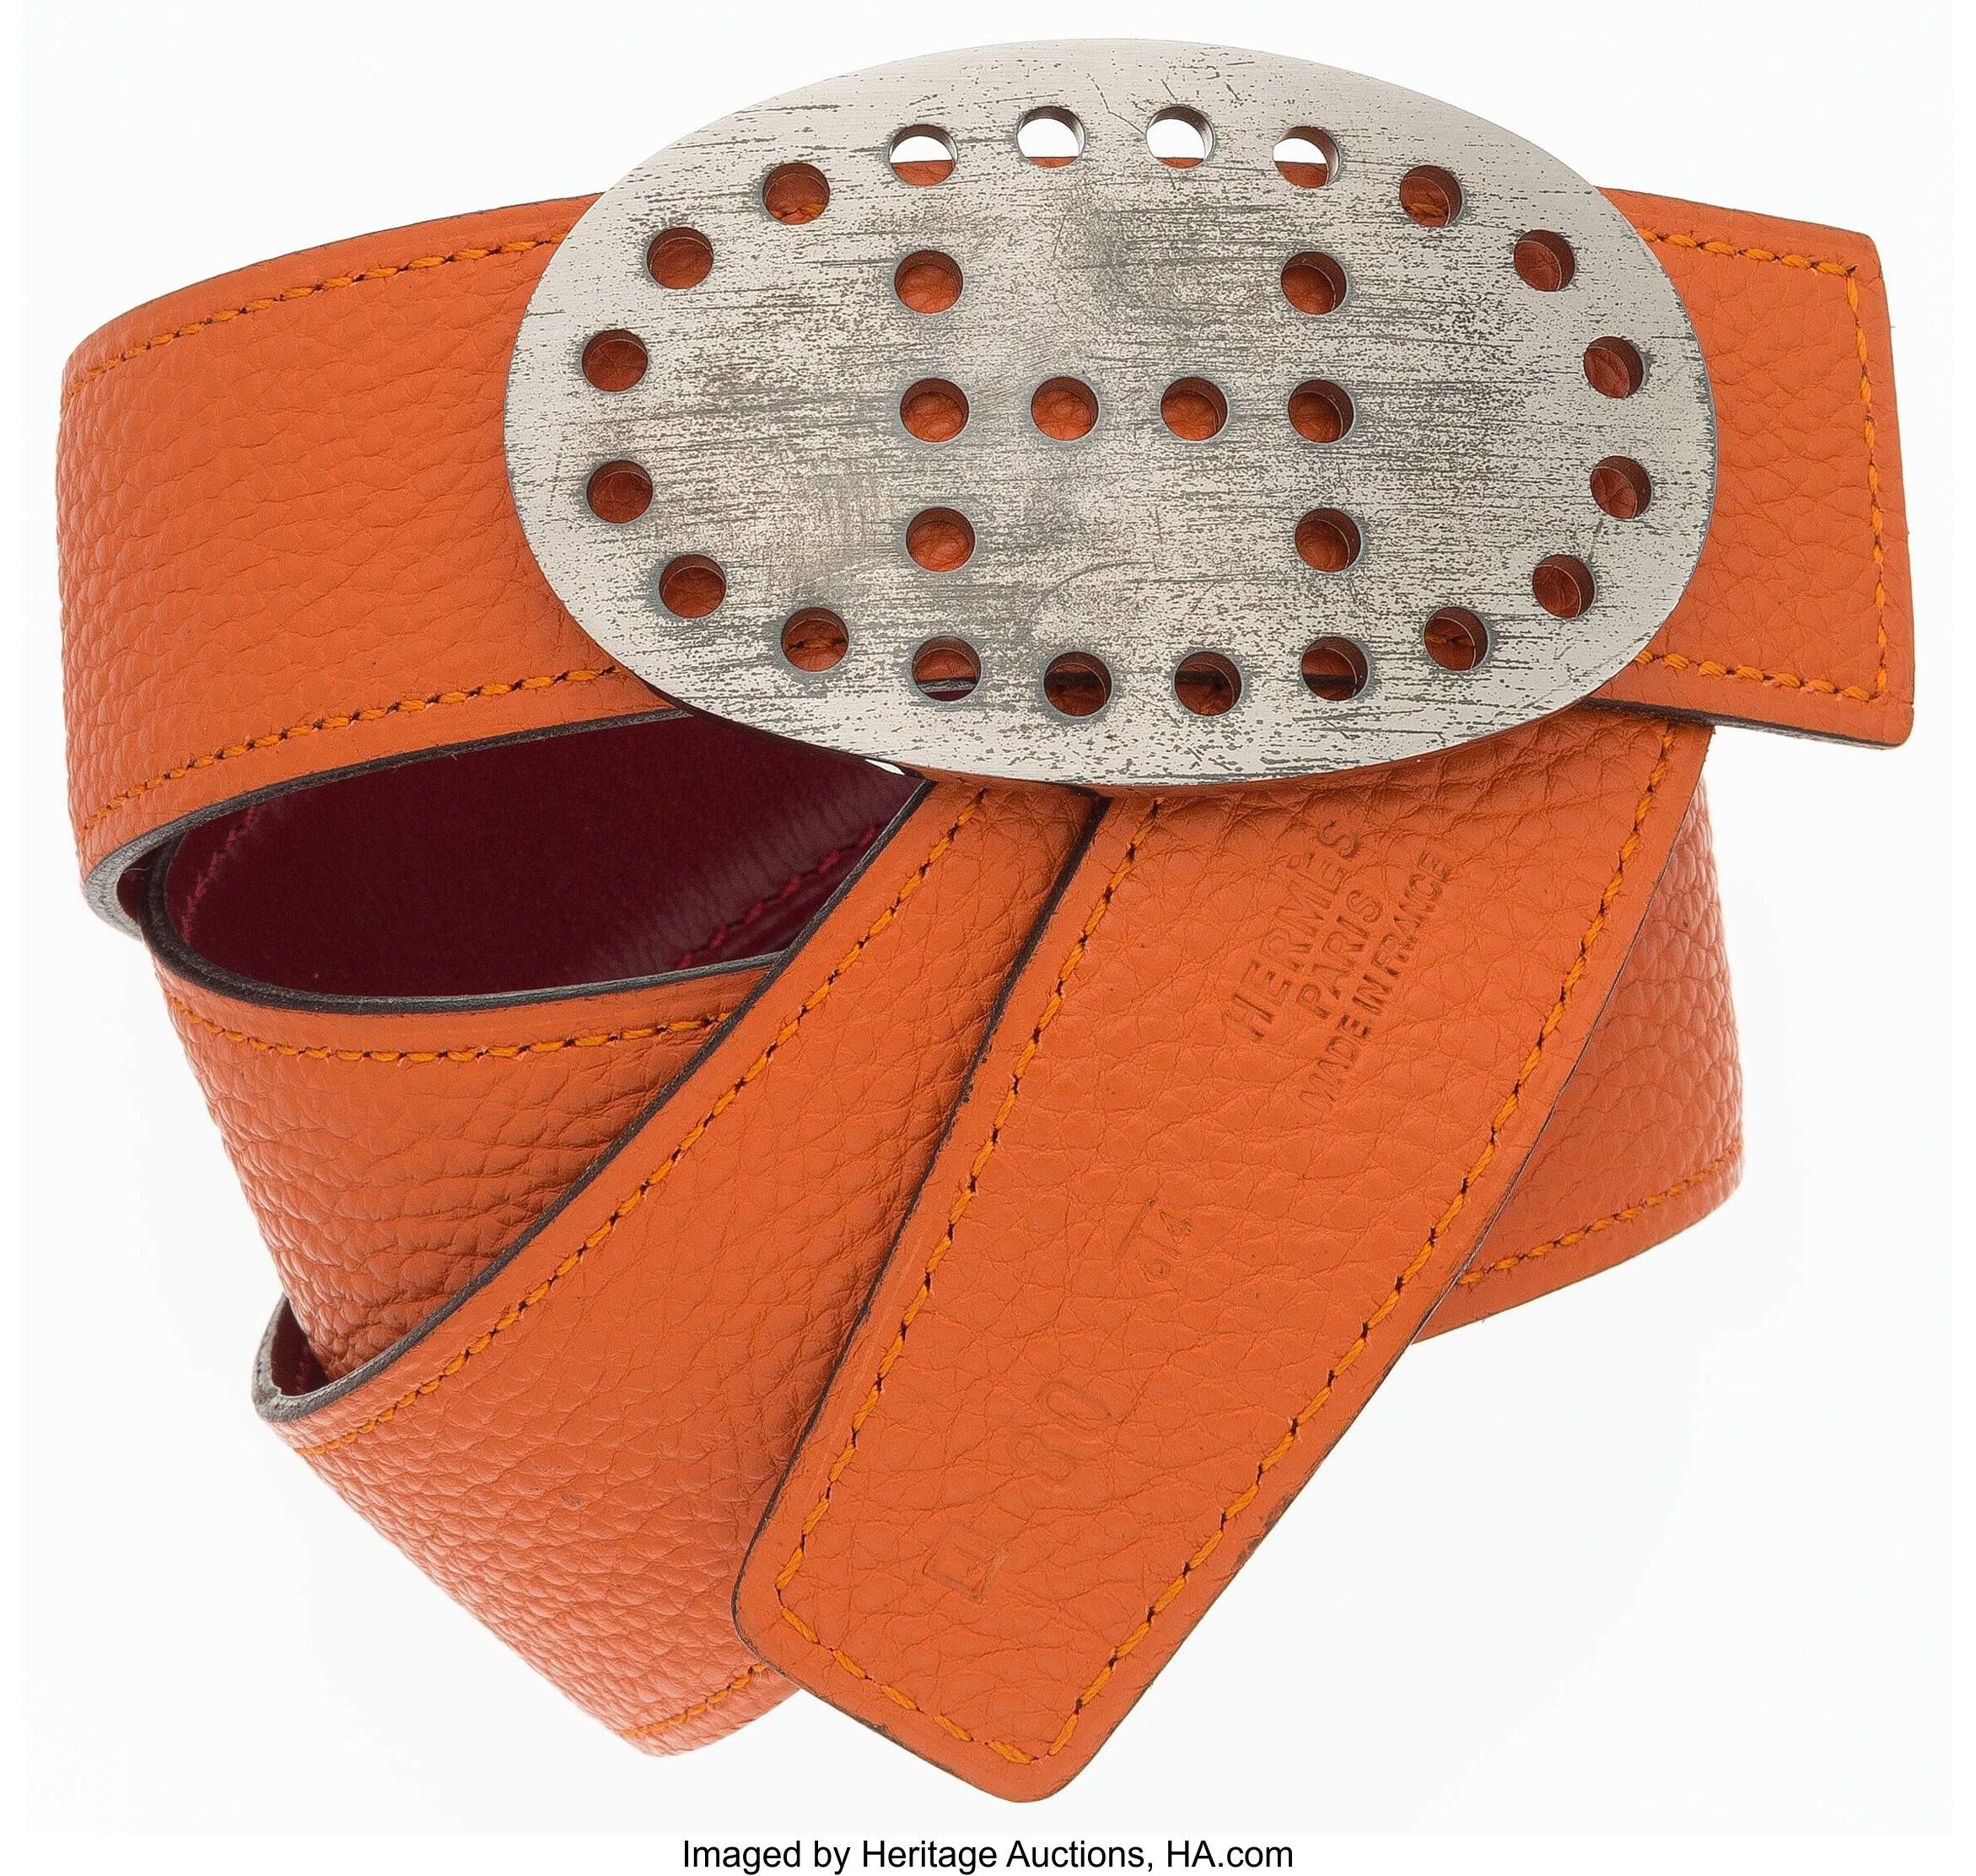 Hermes Black/Brown Leather H Buckle Reversible Belt 80 CM Hermes